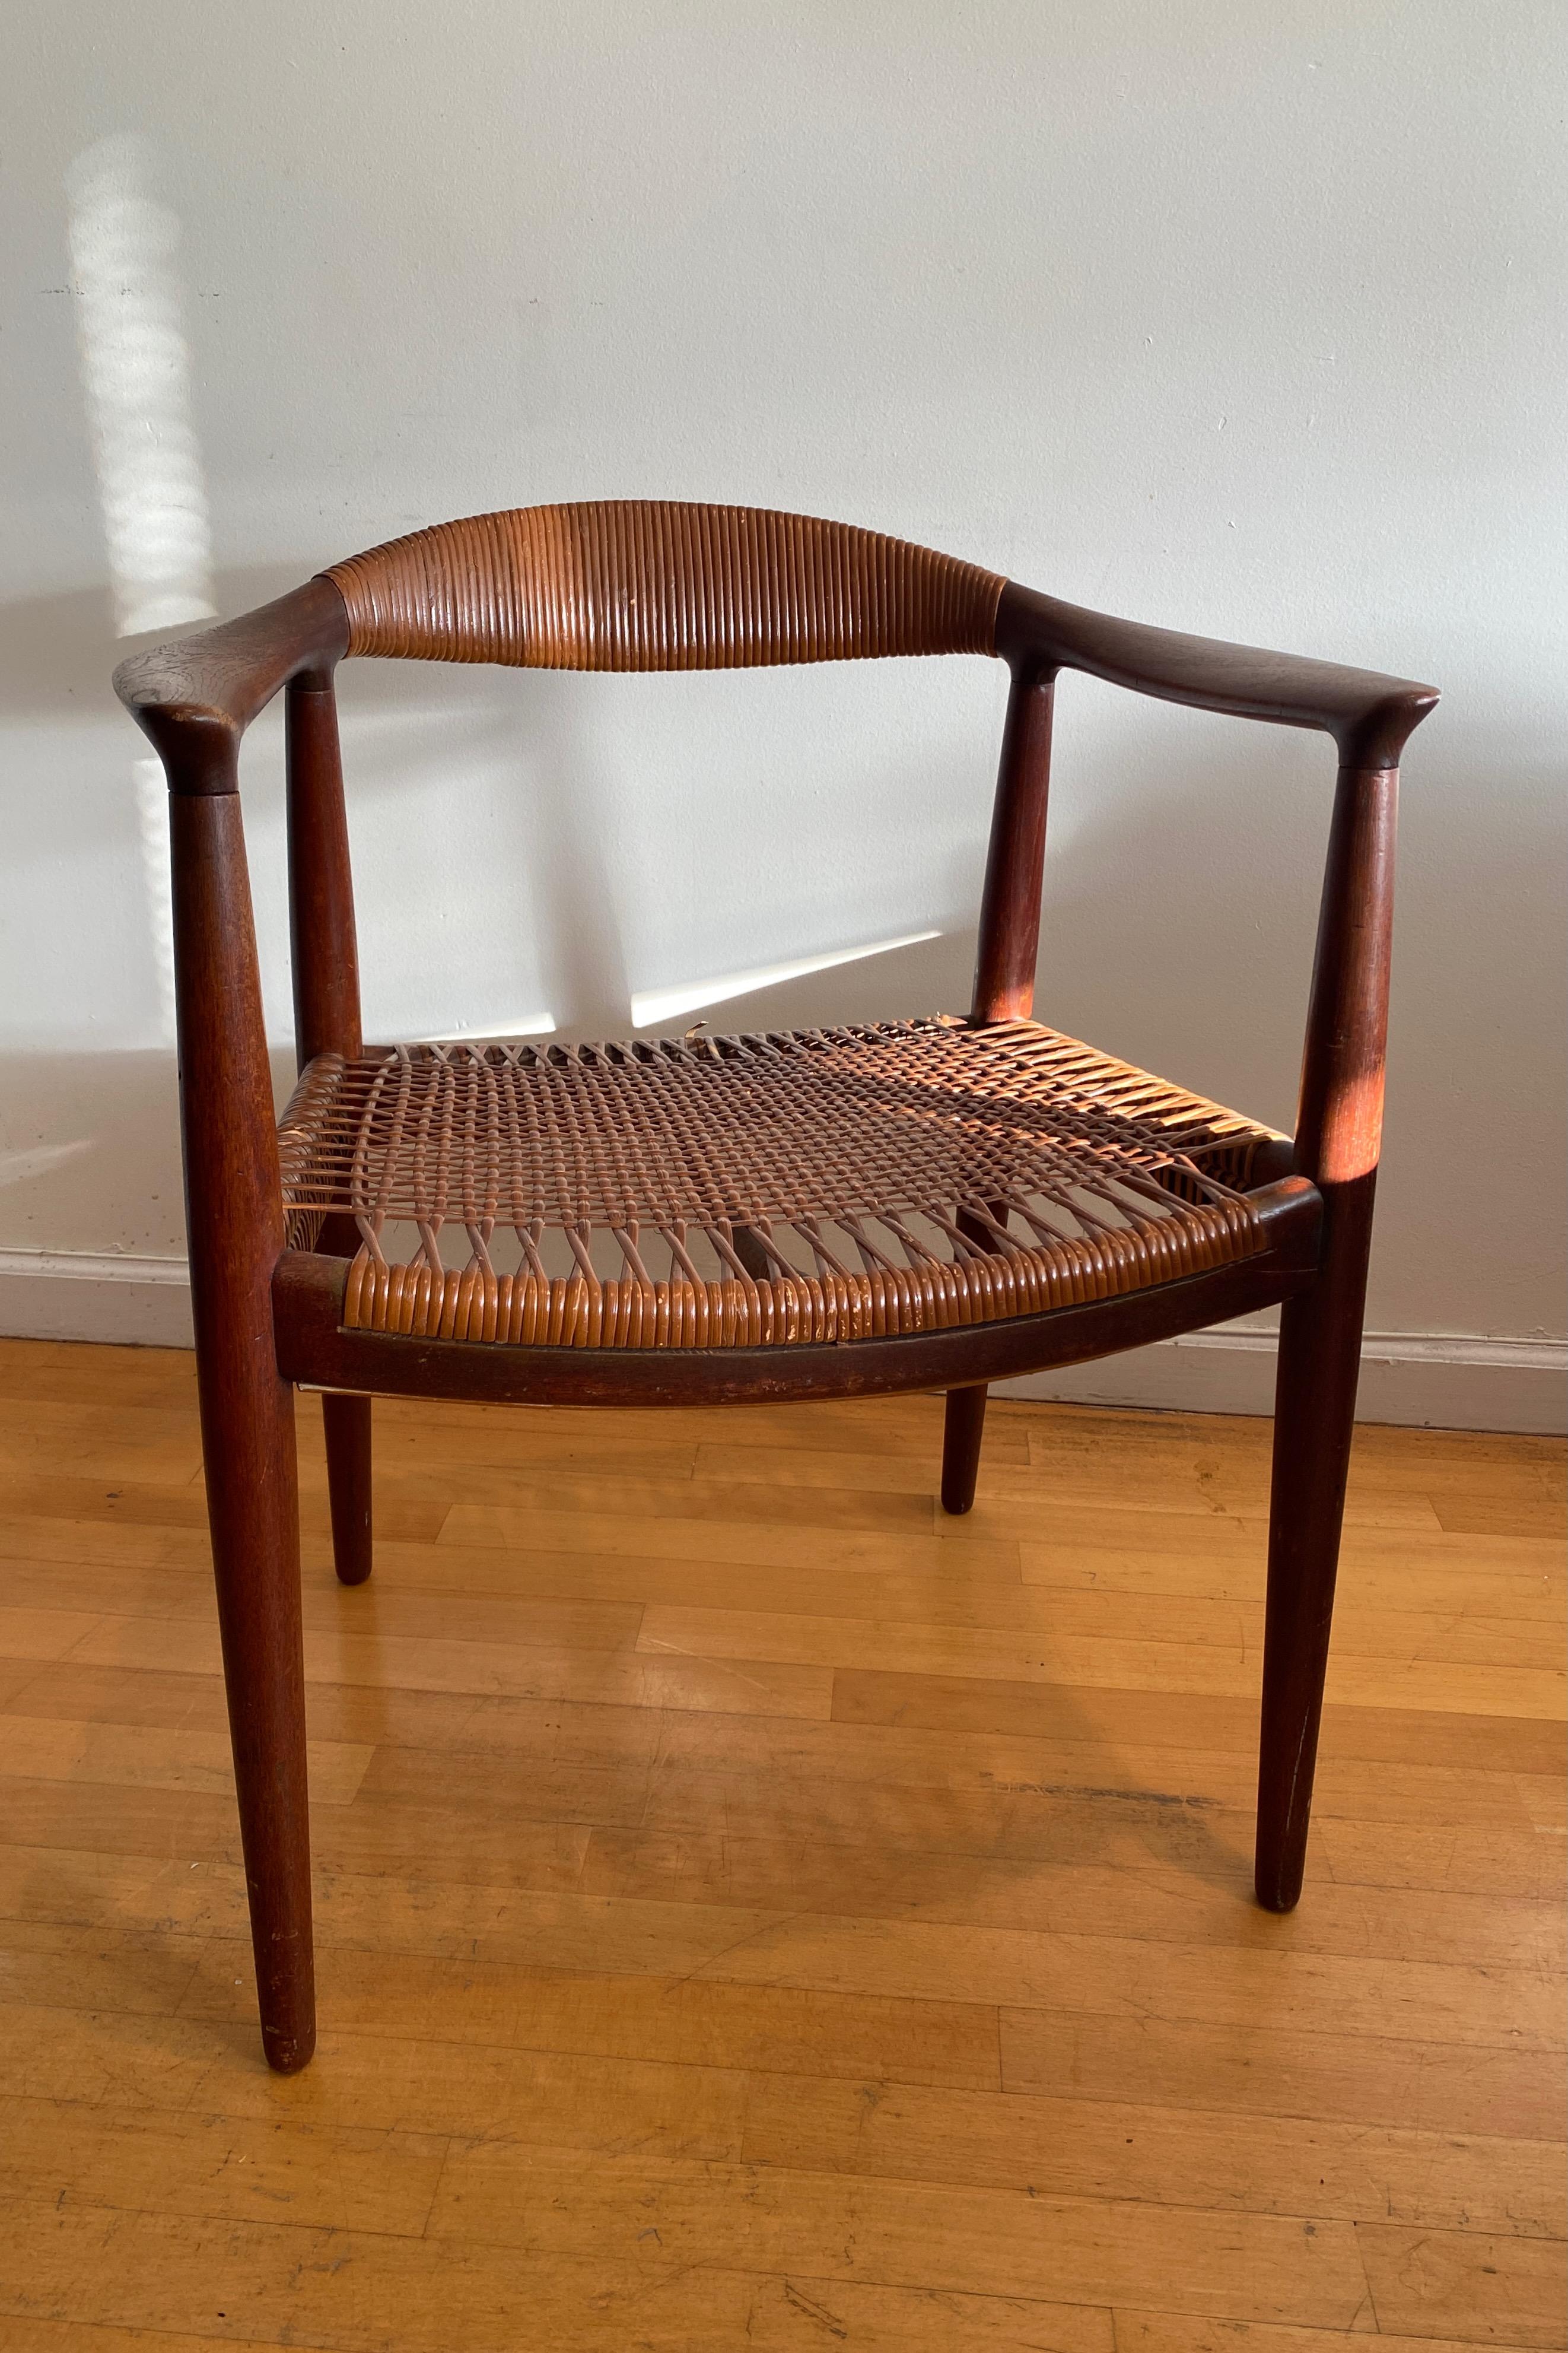 Rare paire de chaises modèle JH501 de Hans J Wegner, conçues en 1949 et fabriquées par Johannes Hansen au Danemark. 

Le cadre et le rotin de cette paire sont usés et déchirés (voir les photos). Convient à un projet de restauration et est évalué